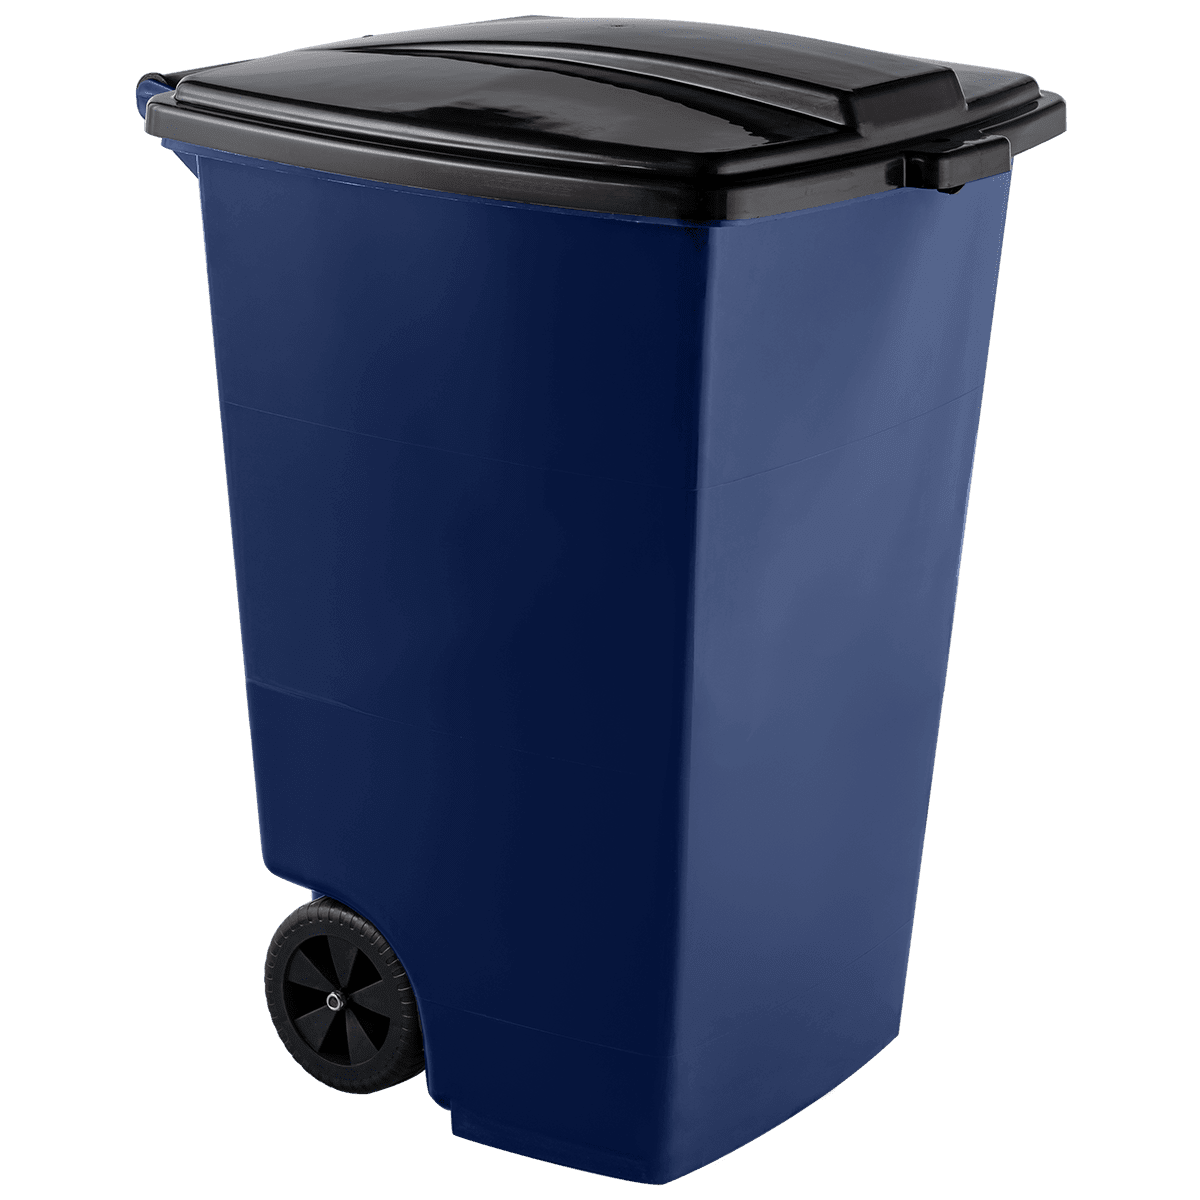 Контейнер для мусора  120 тёмно-синий